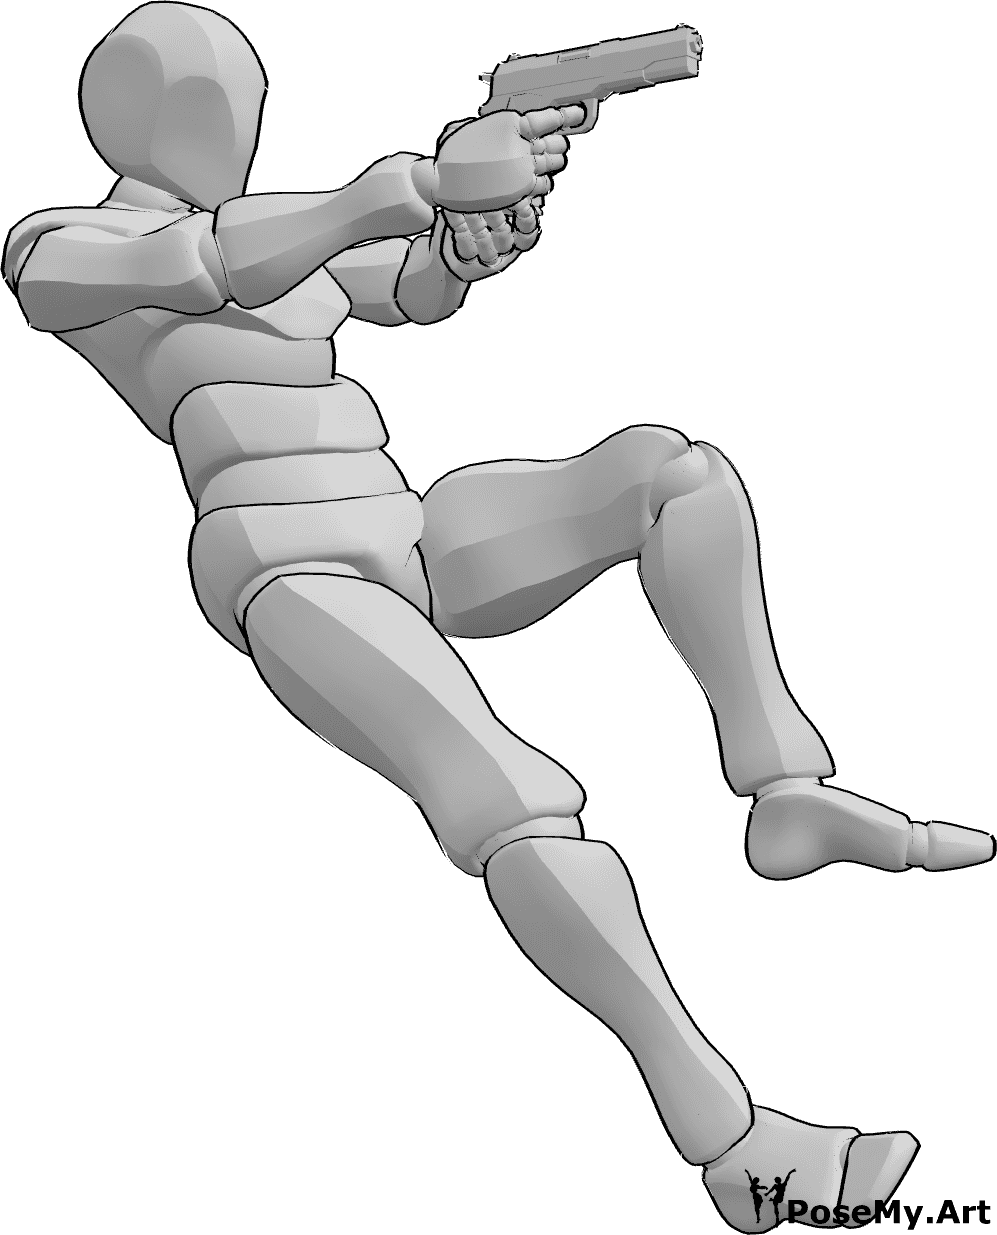 Référence des poses- Pose masculine au pistolet - L'homme tombe en arrière tout en visant le pistolet et en le tenant à deux mains.